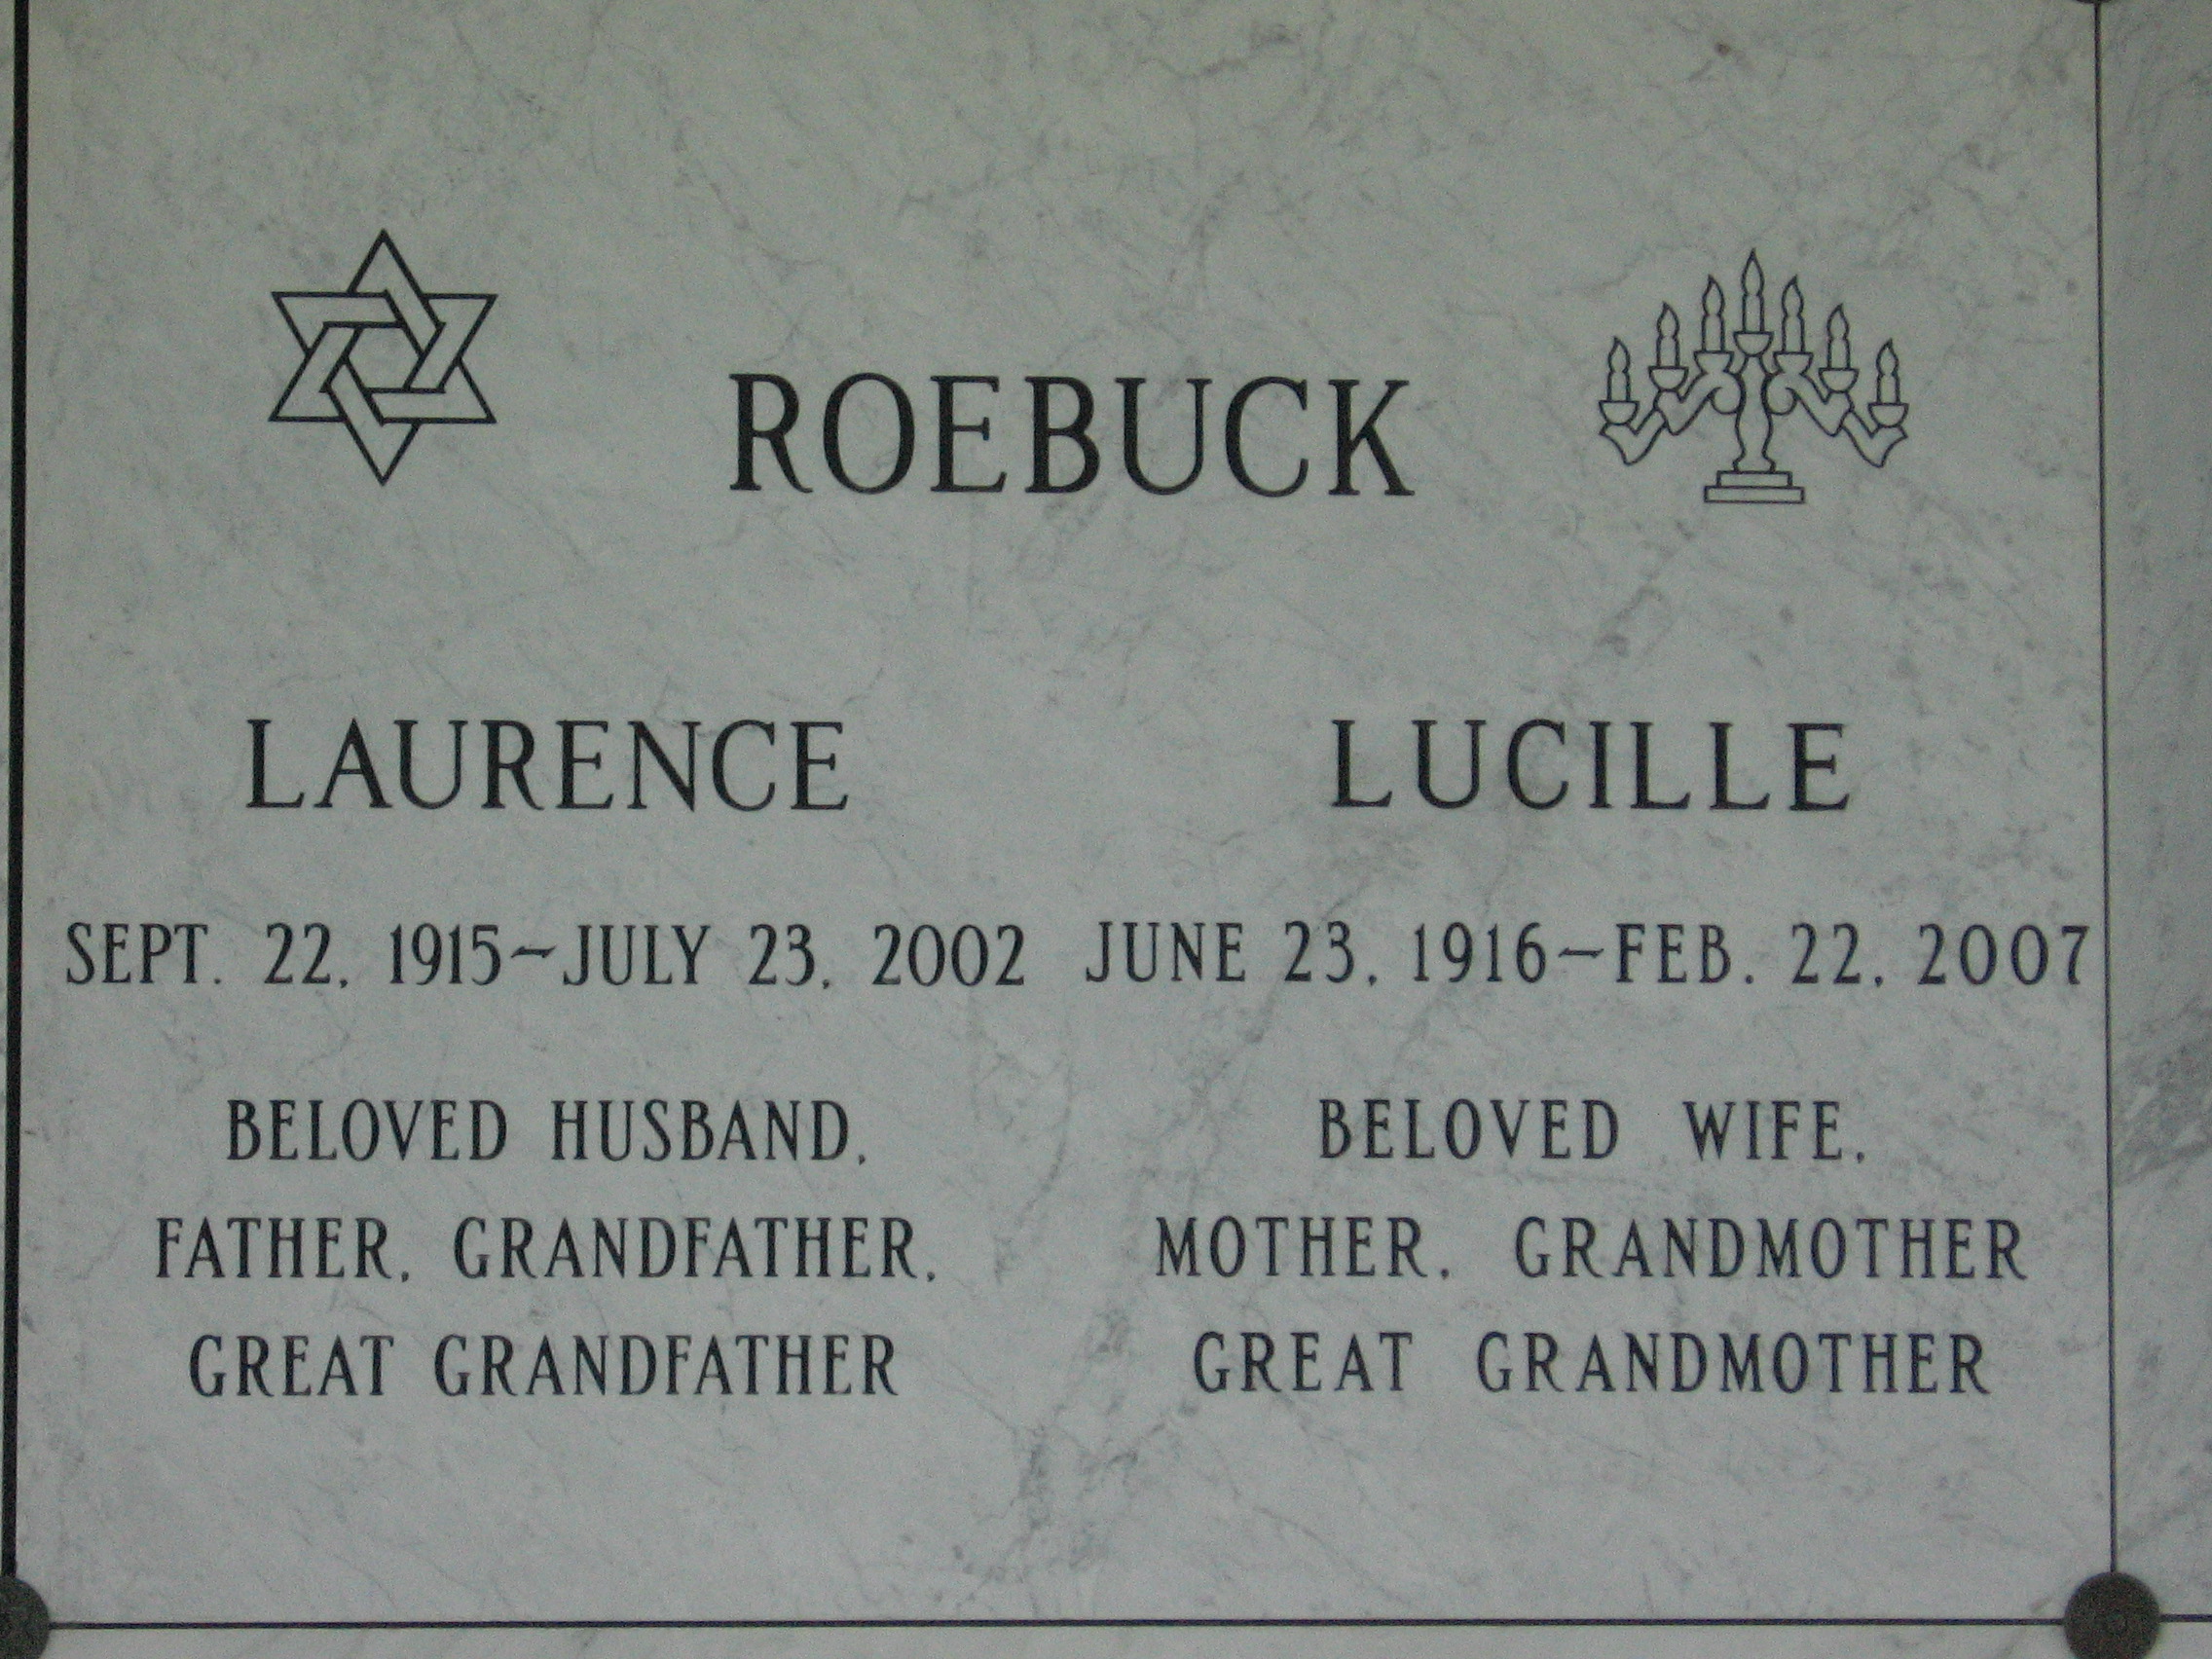 Laurence Roebuck